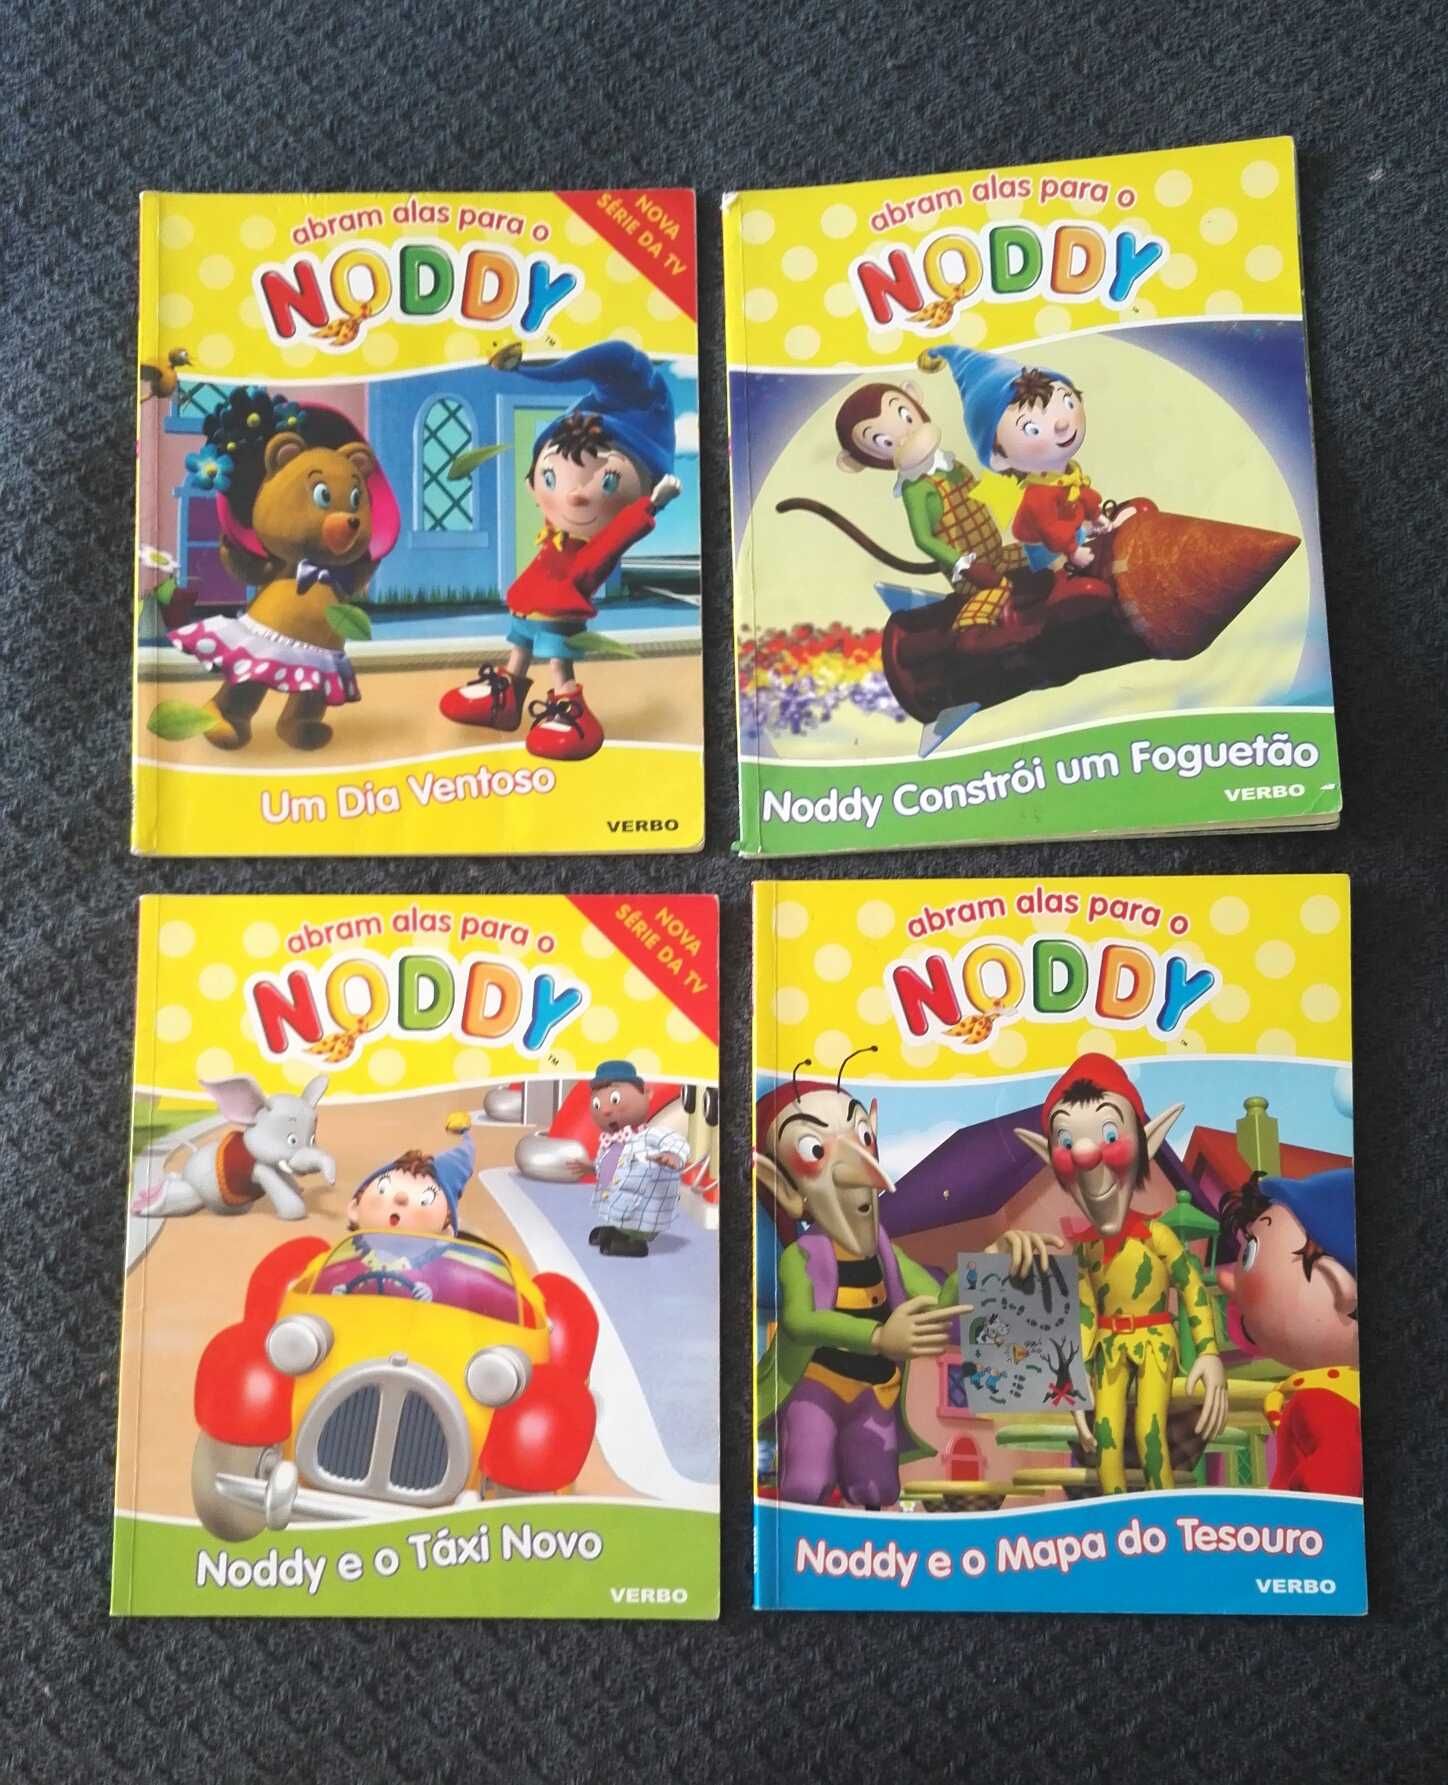 Livros "Abram alas para o Noddy"